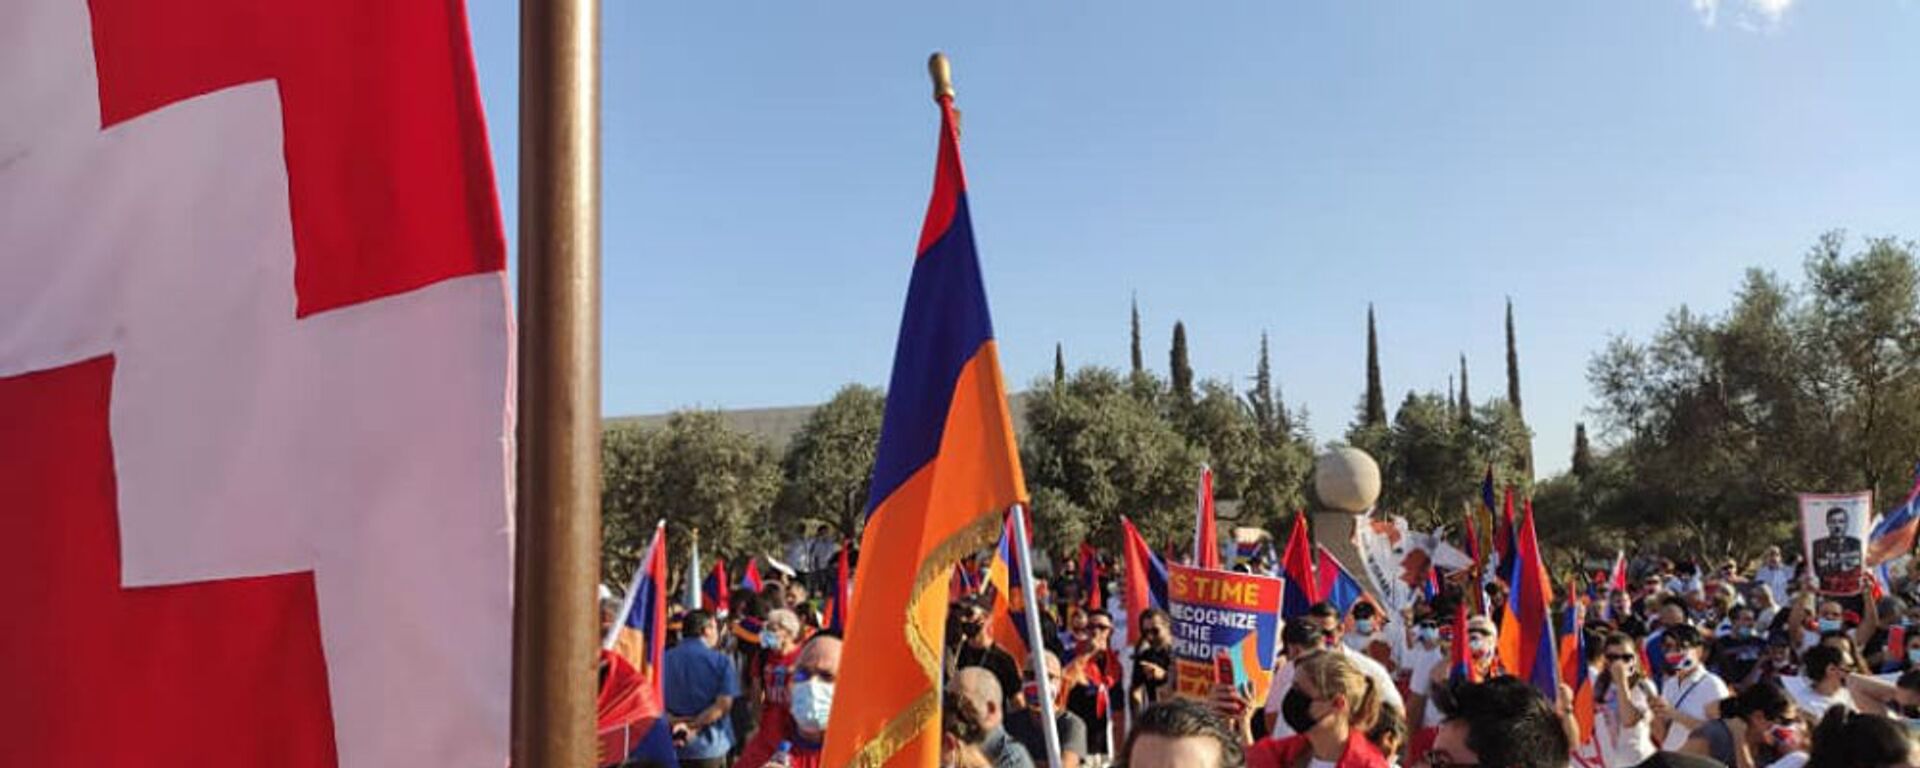 Армяне Израиля организовали акцию перед зданием МИД  (22 октября 2020). Иерусалим - Sputnik Արմենիա, 1920, 23.10.2020